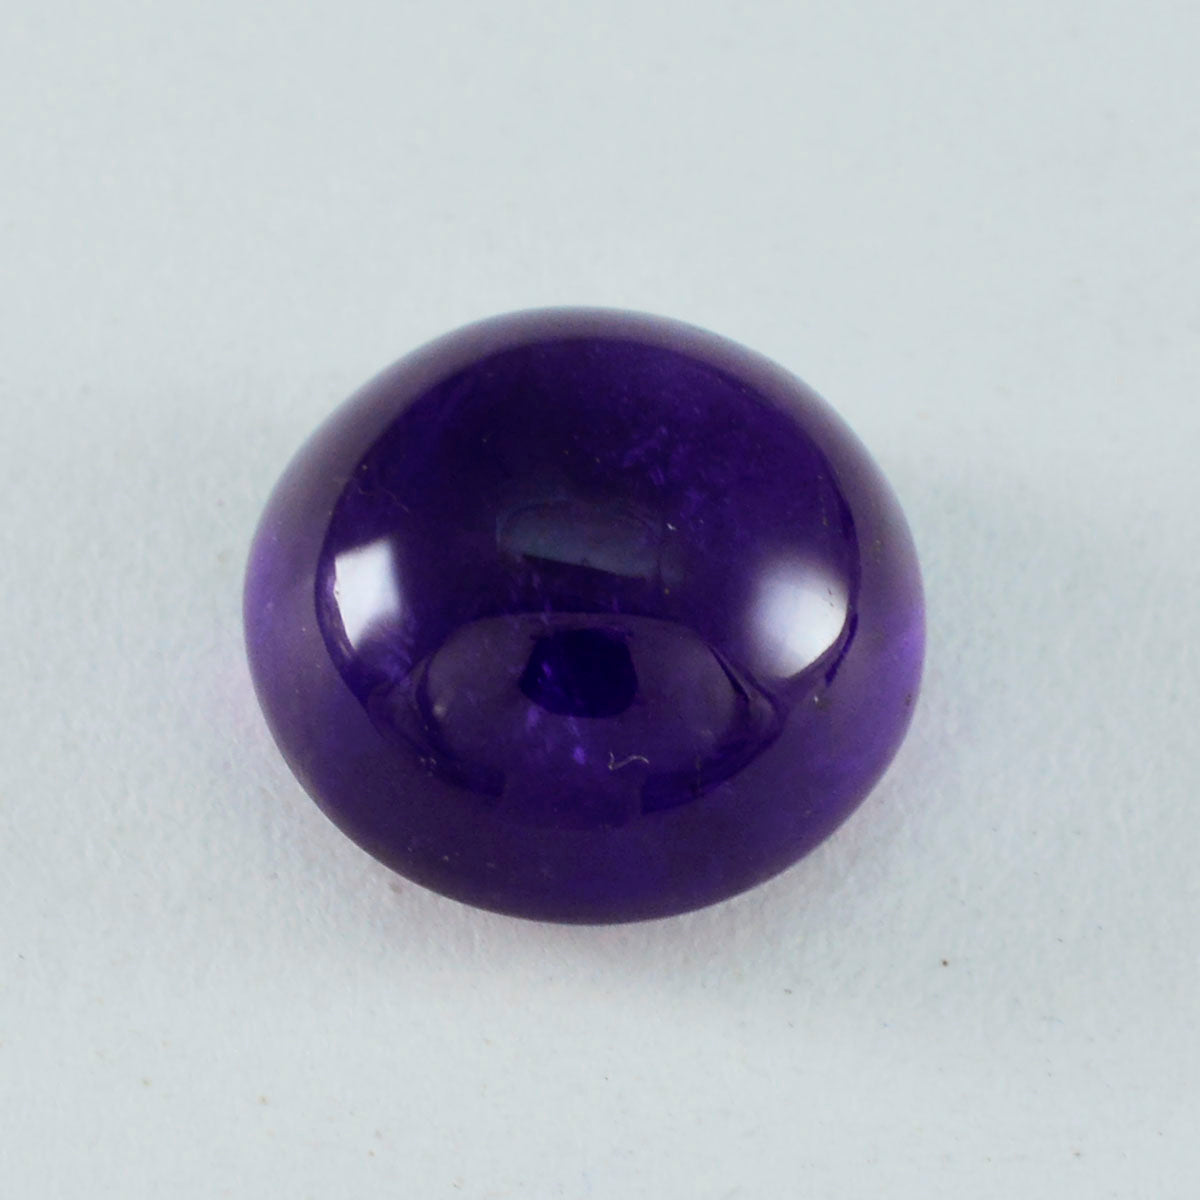 Riyogems 1PC Purple Amethyst Cabochon 13X13 mm Round Shape A+1 Quality Loose Gems